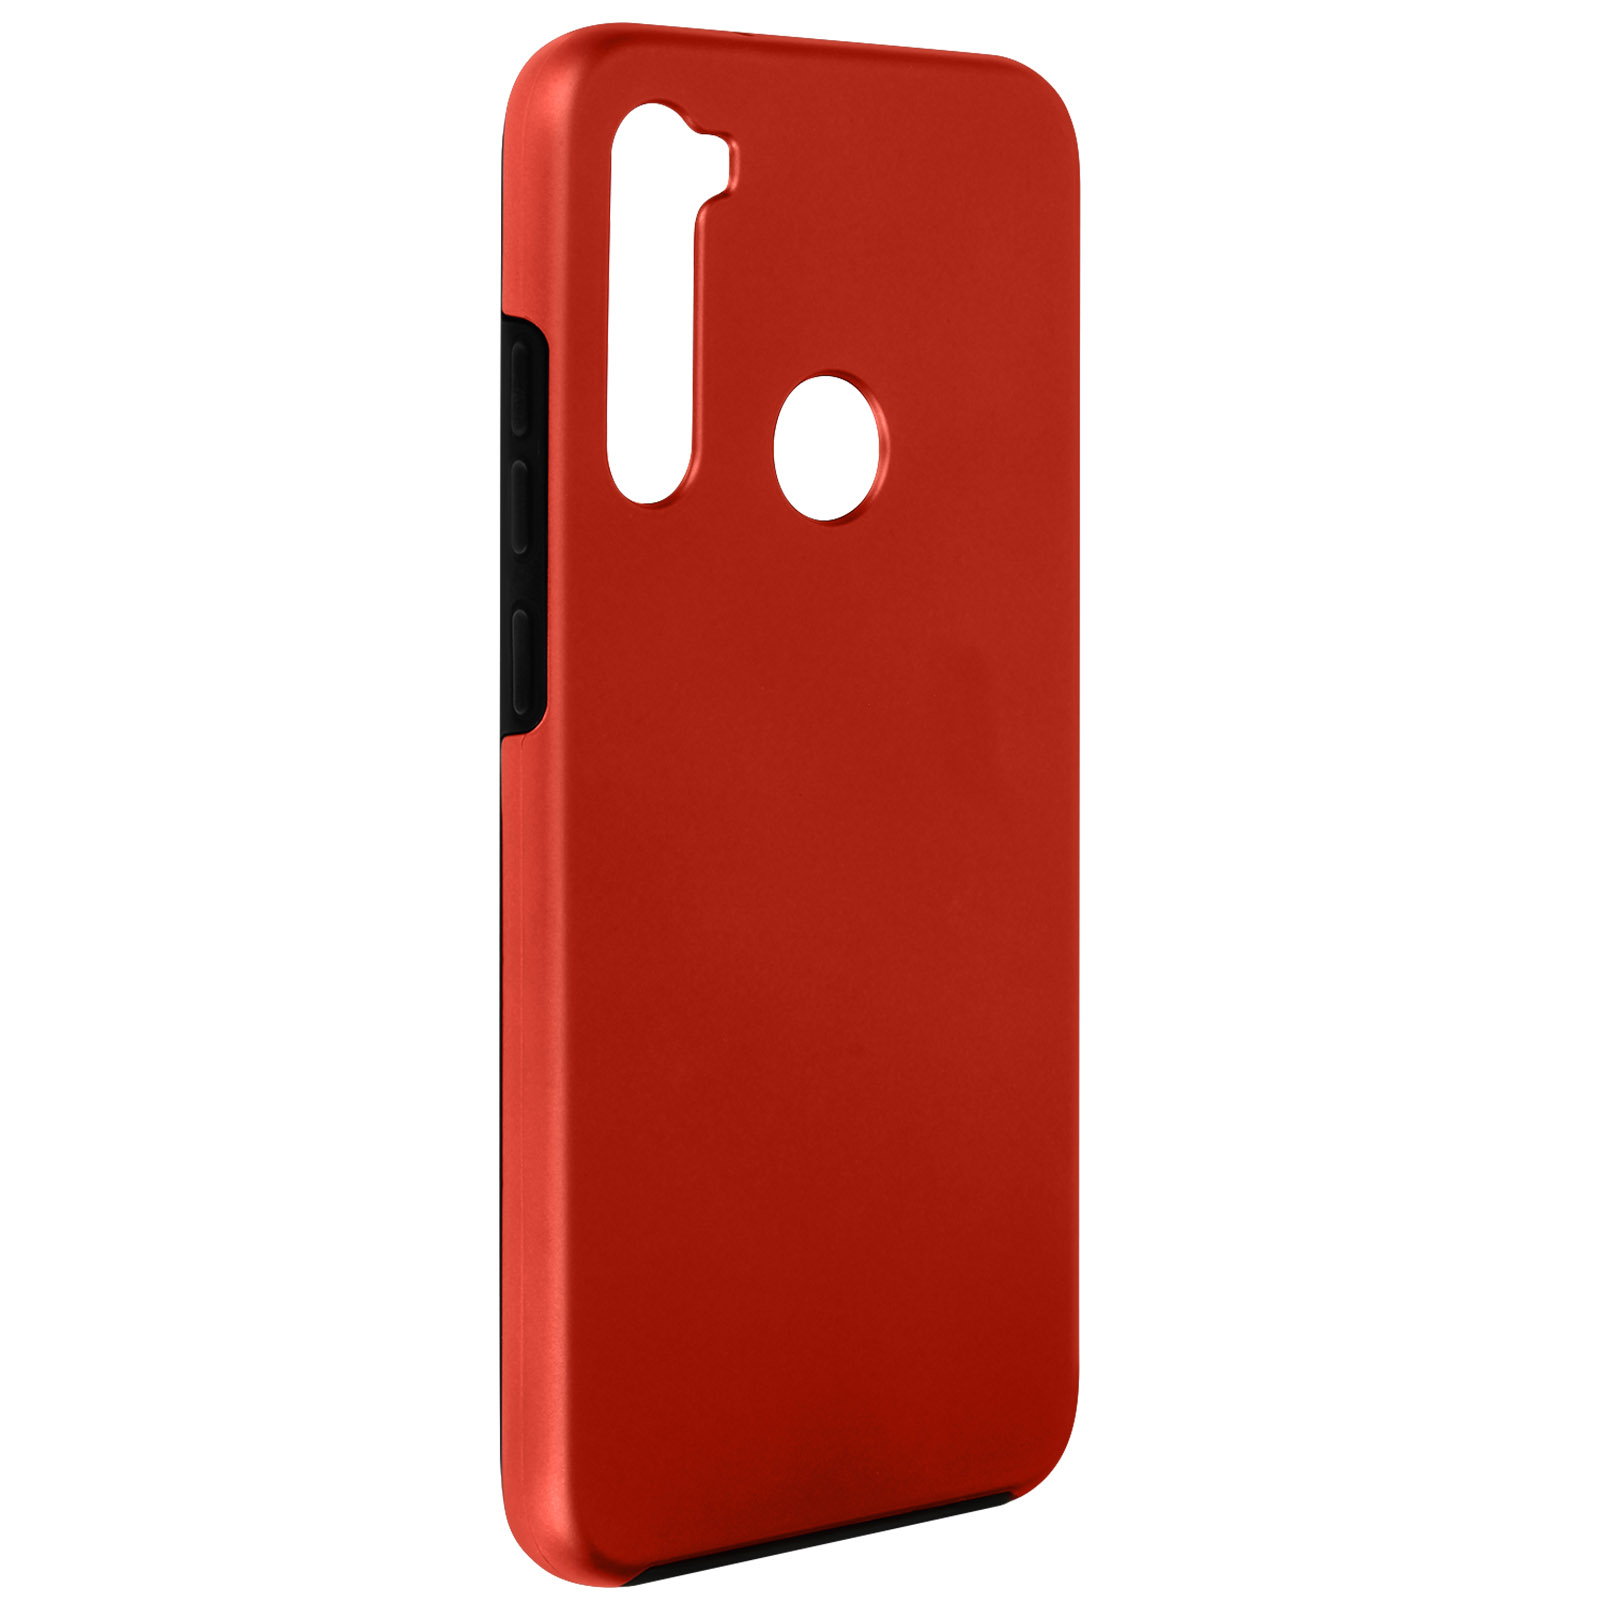 AVIZAR Rundumschutz Series, Full Rot Cover, Redmi 8, Xiaomi, Note